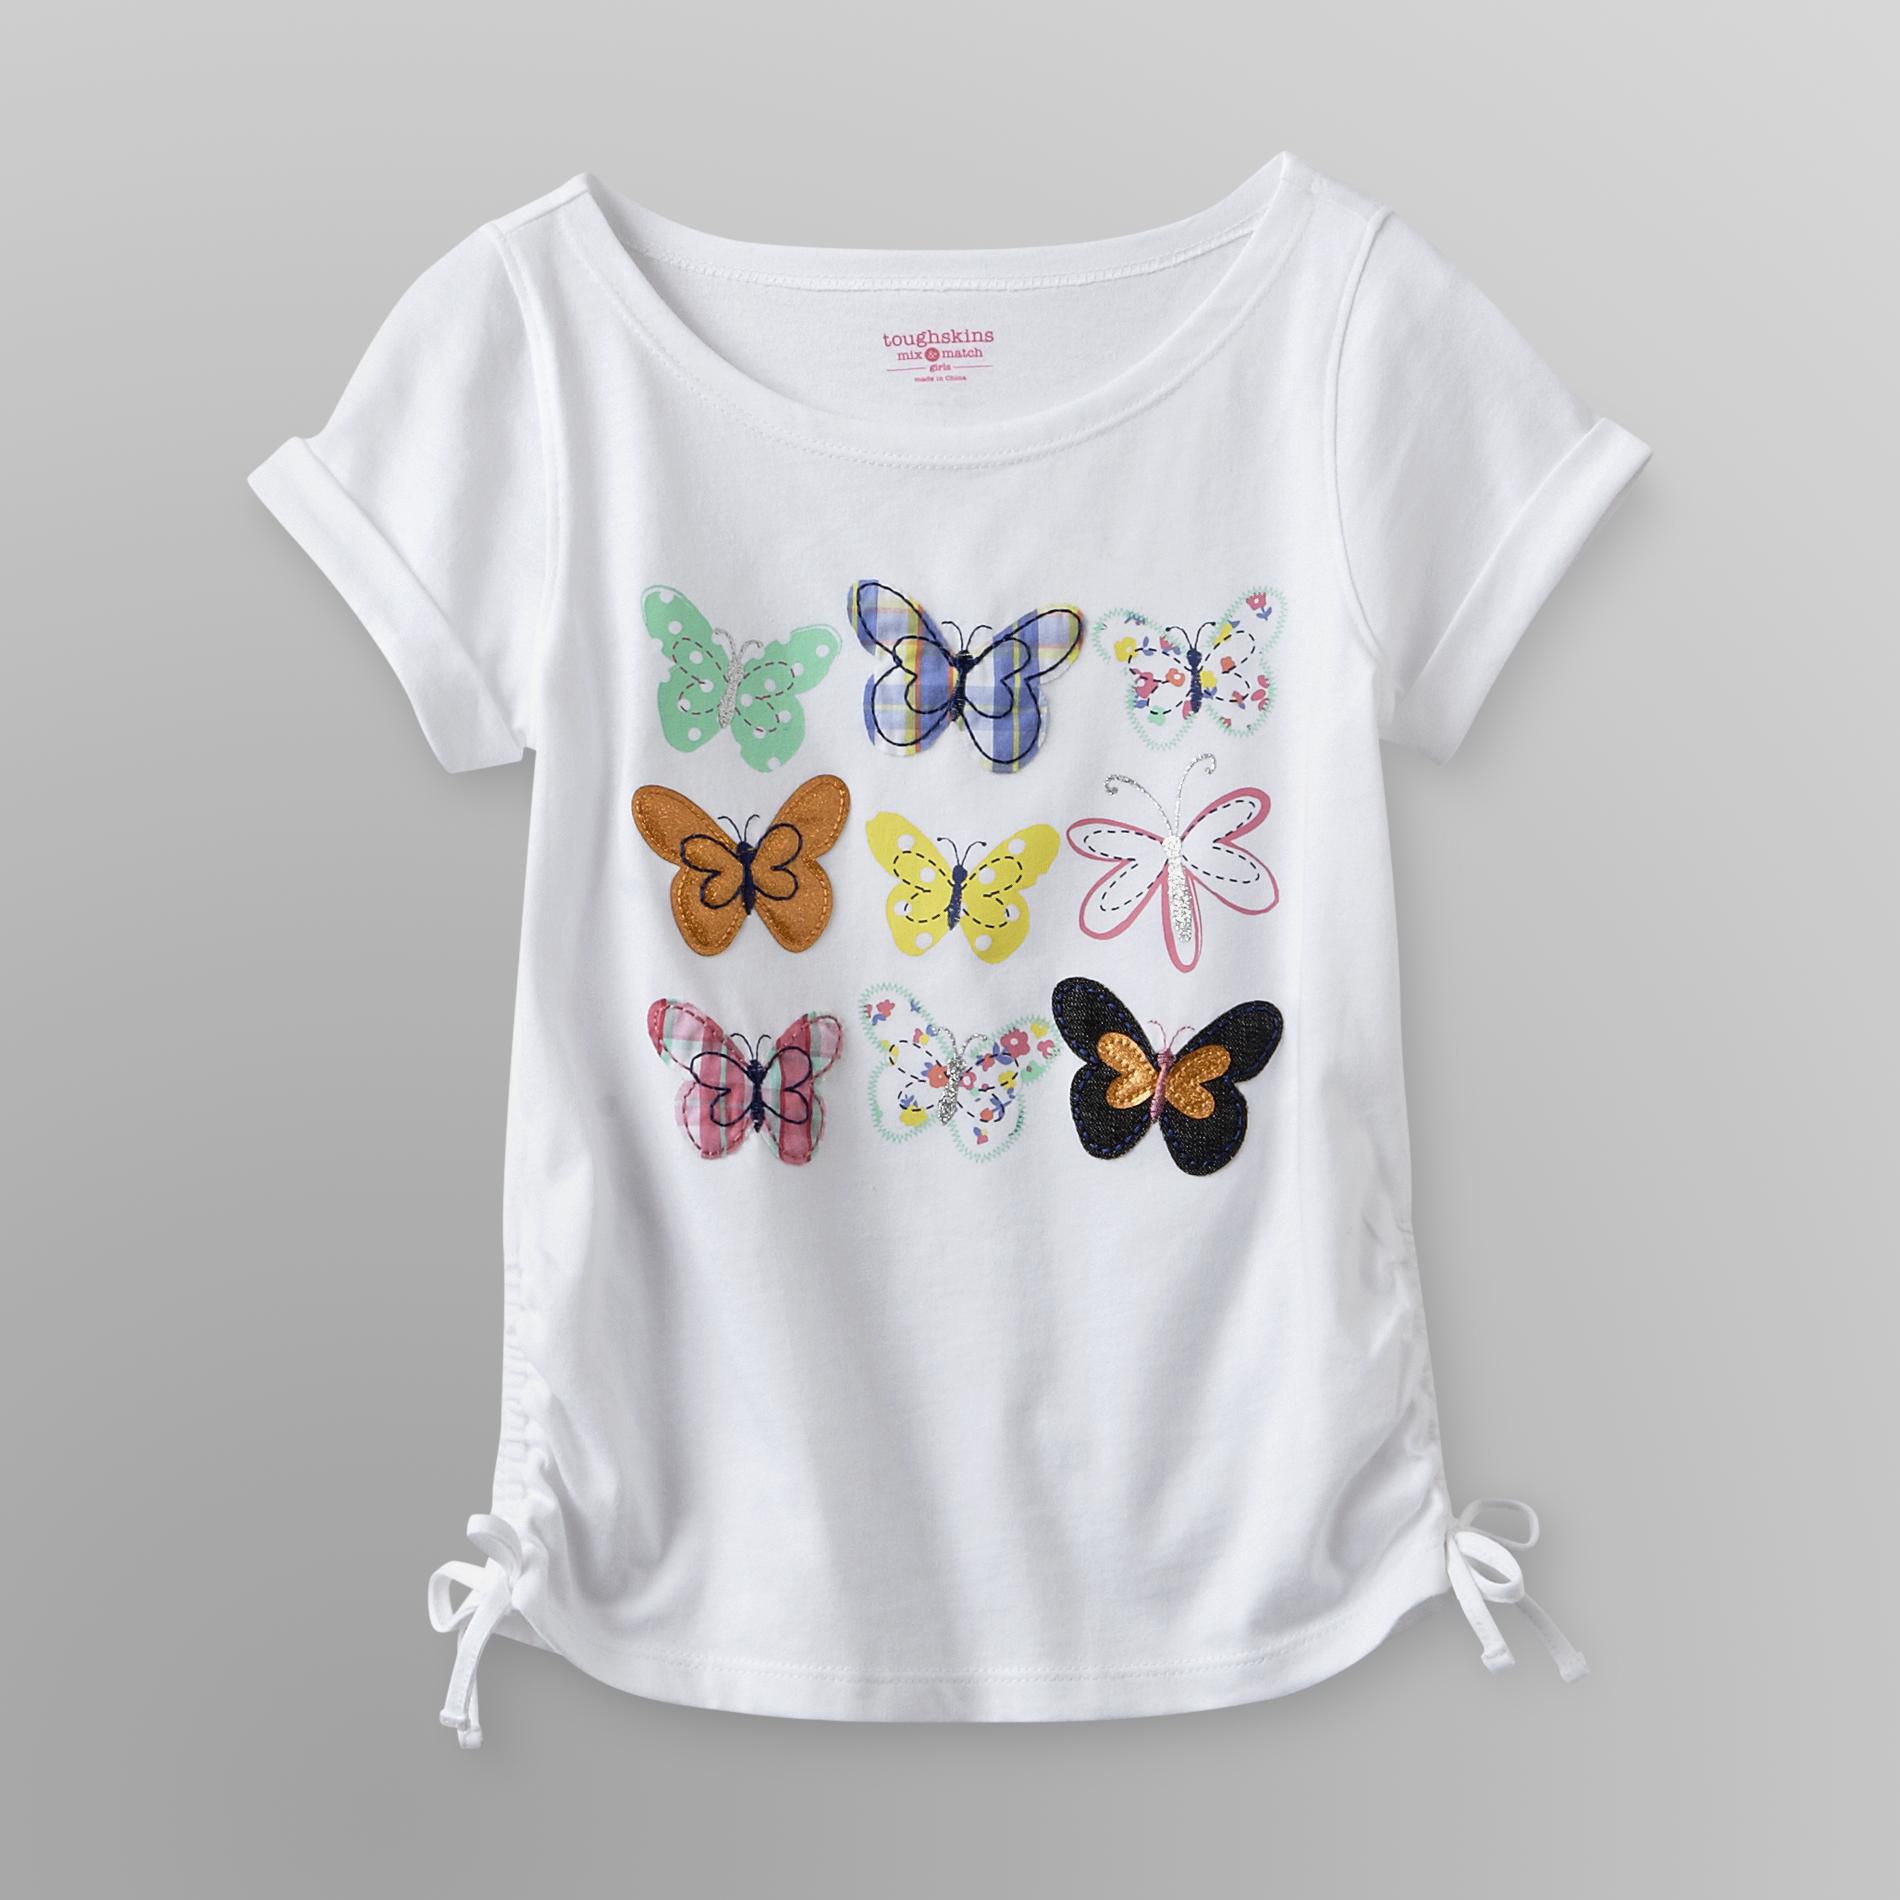 Toughskins Girl's Shirred Top - Butterflies